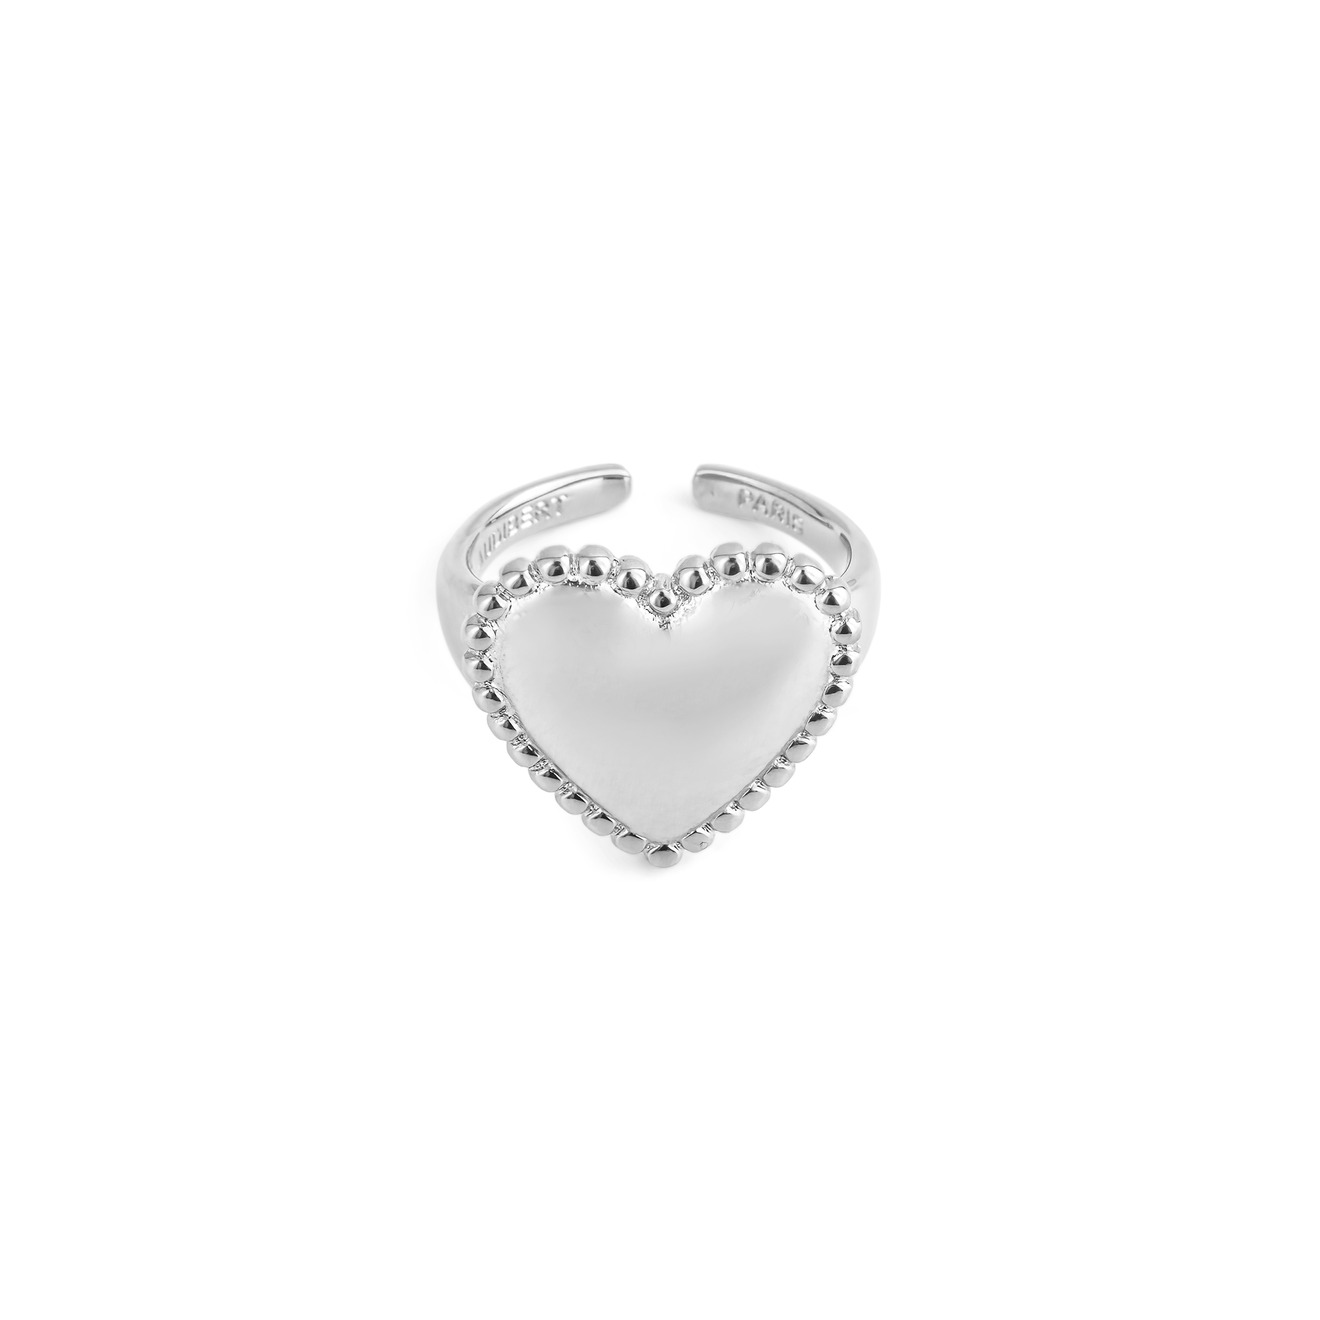 Philippe Audibert Кольцо с сердцем Wanda с серебряным покрытием wanda p361 10 00 20 r10